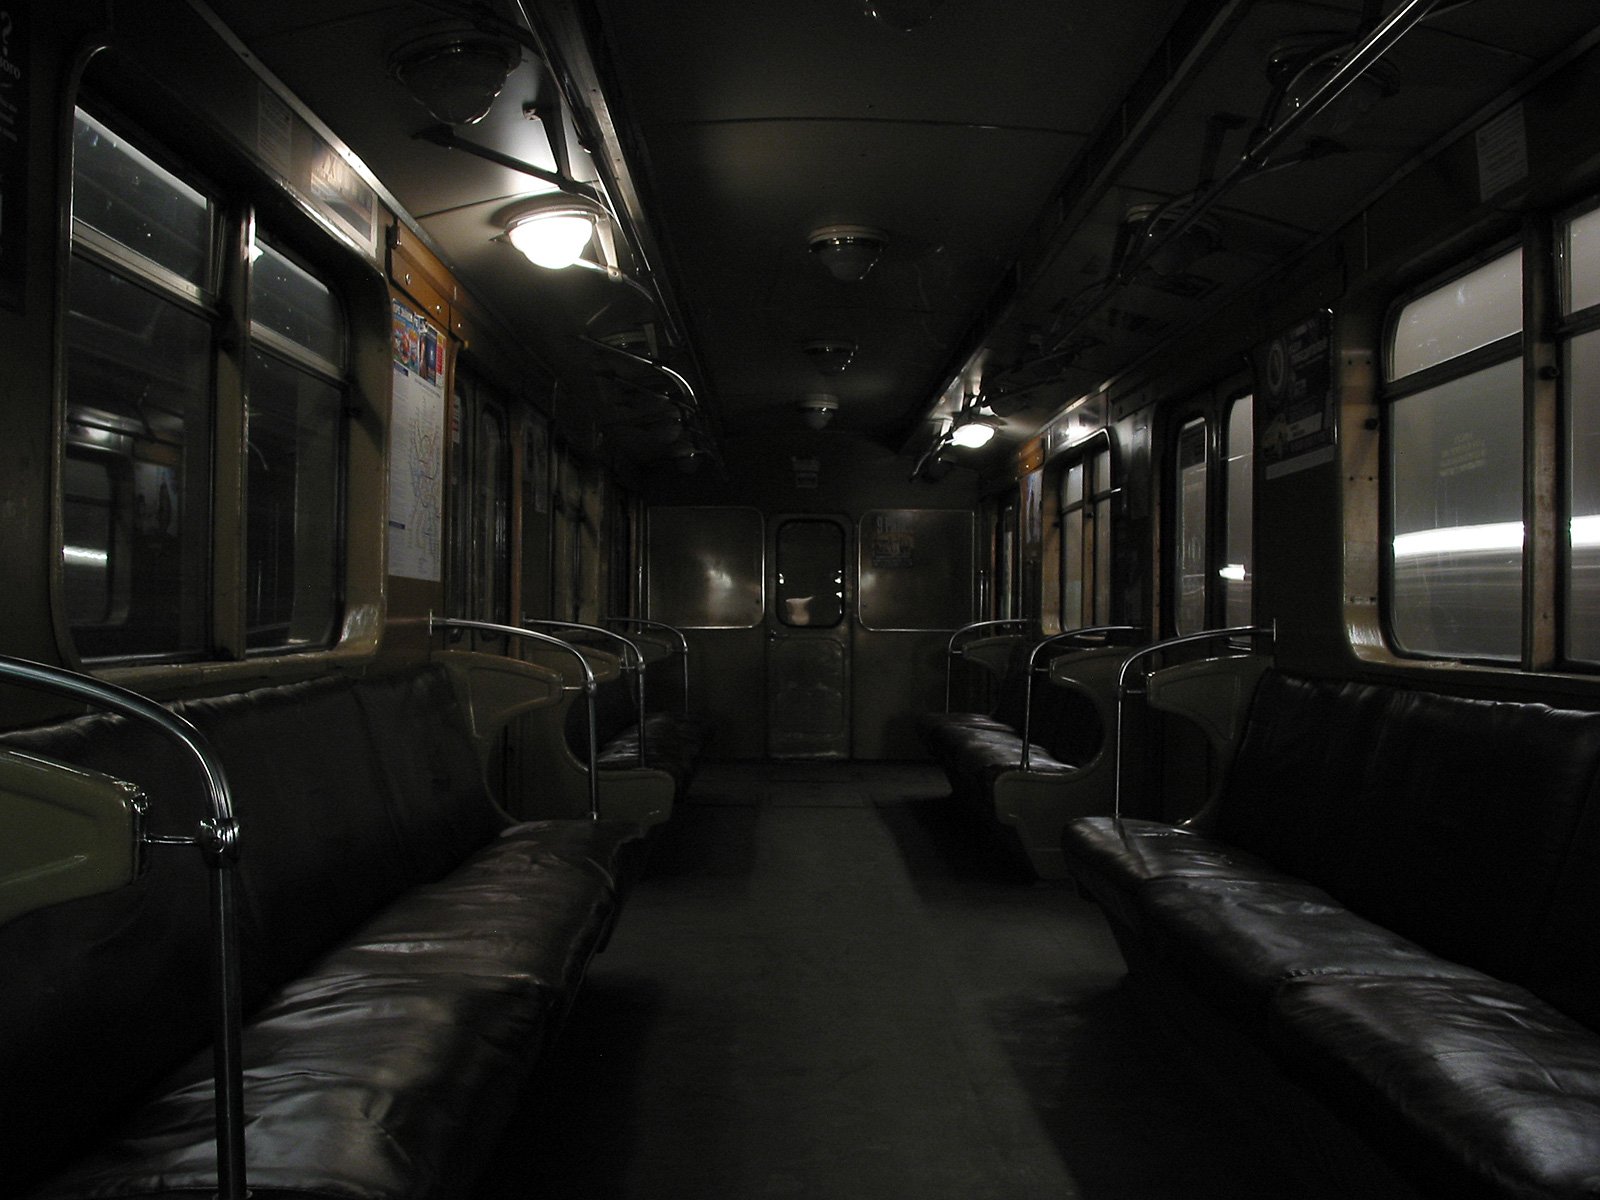 Ночной ретро поезд метро. Метро 2033 вагон метро. Вагон. Пустой вагон метро. Пустое метро.